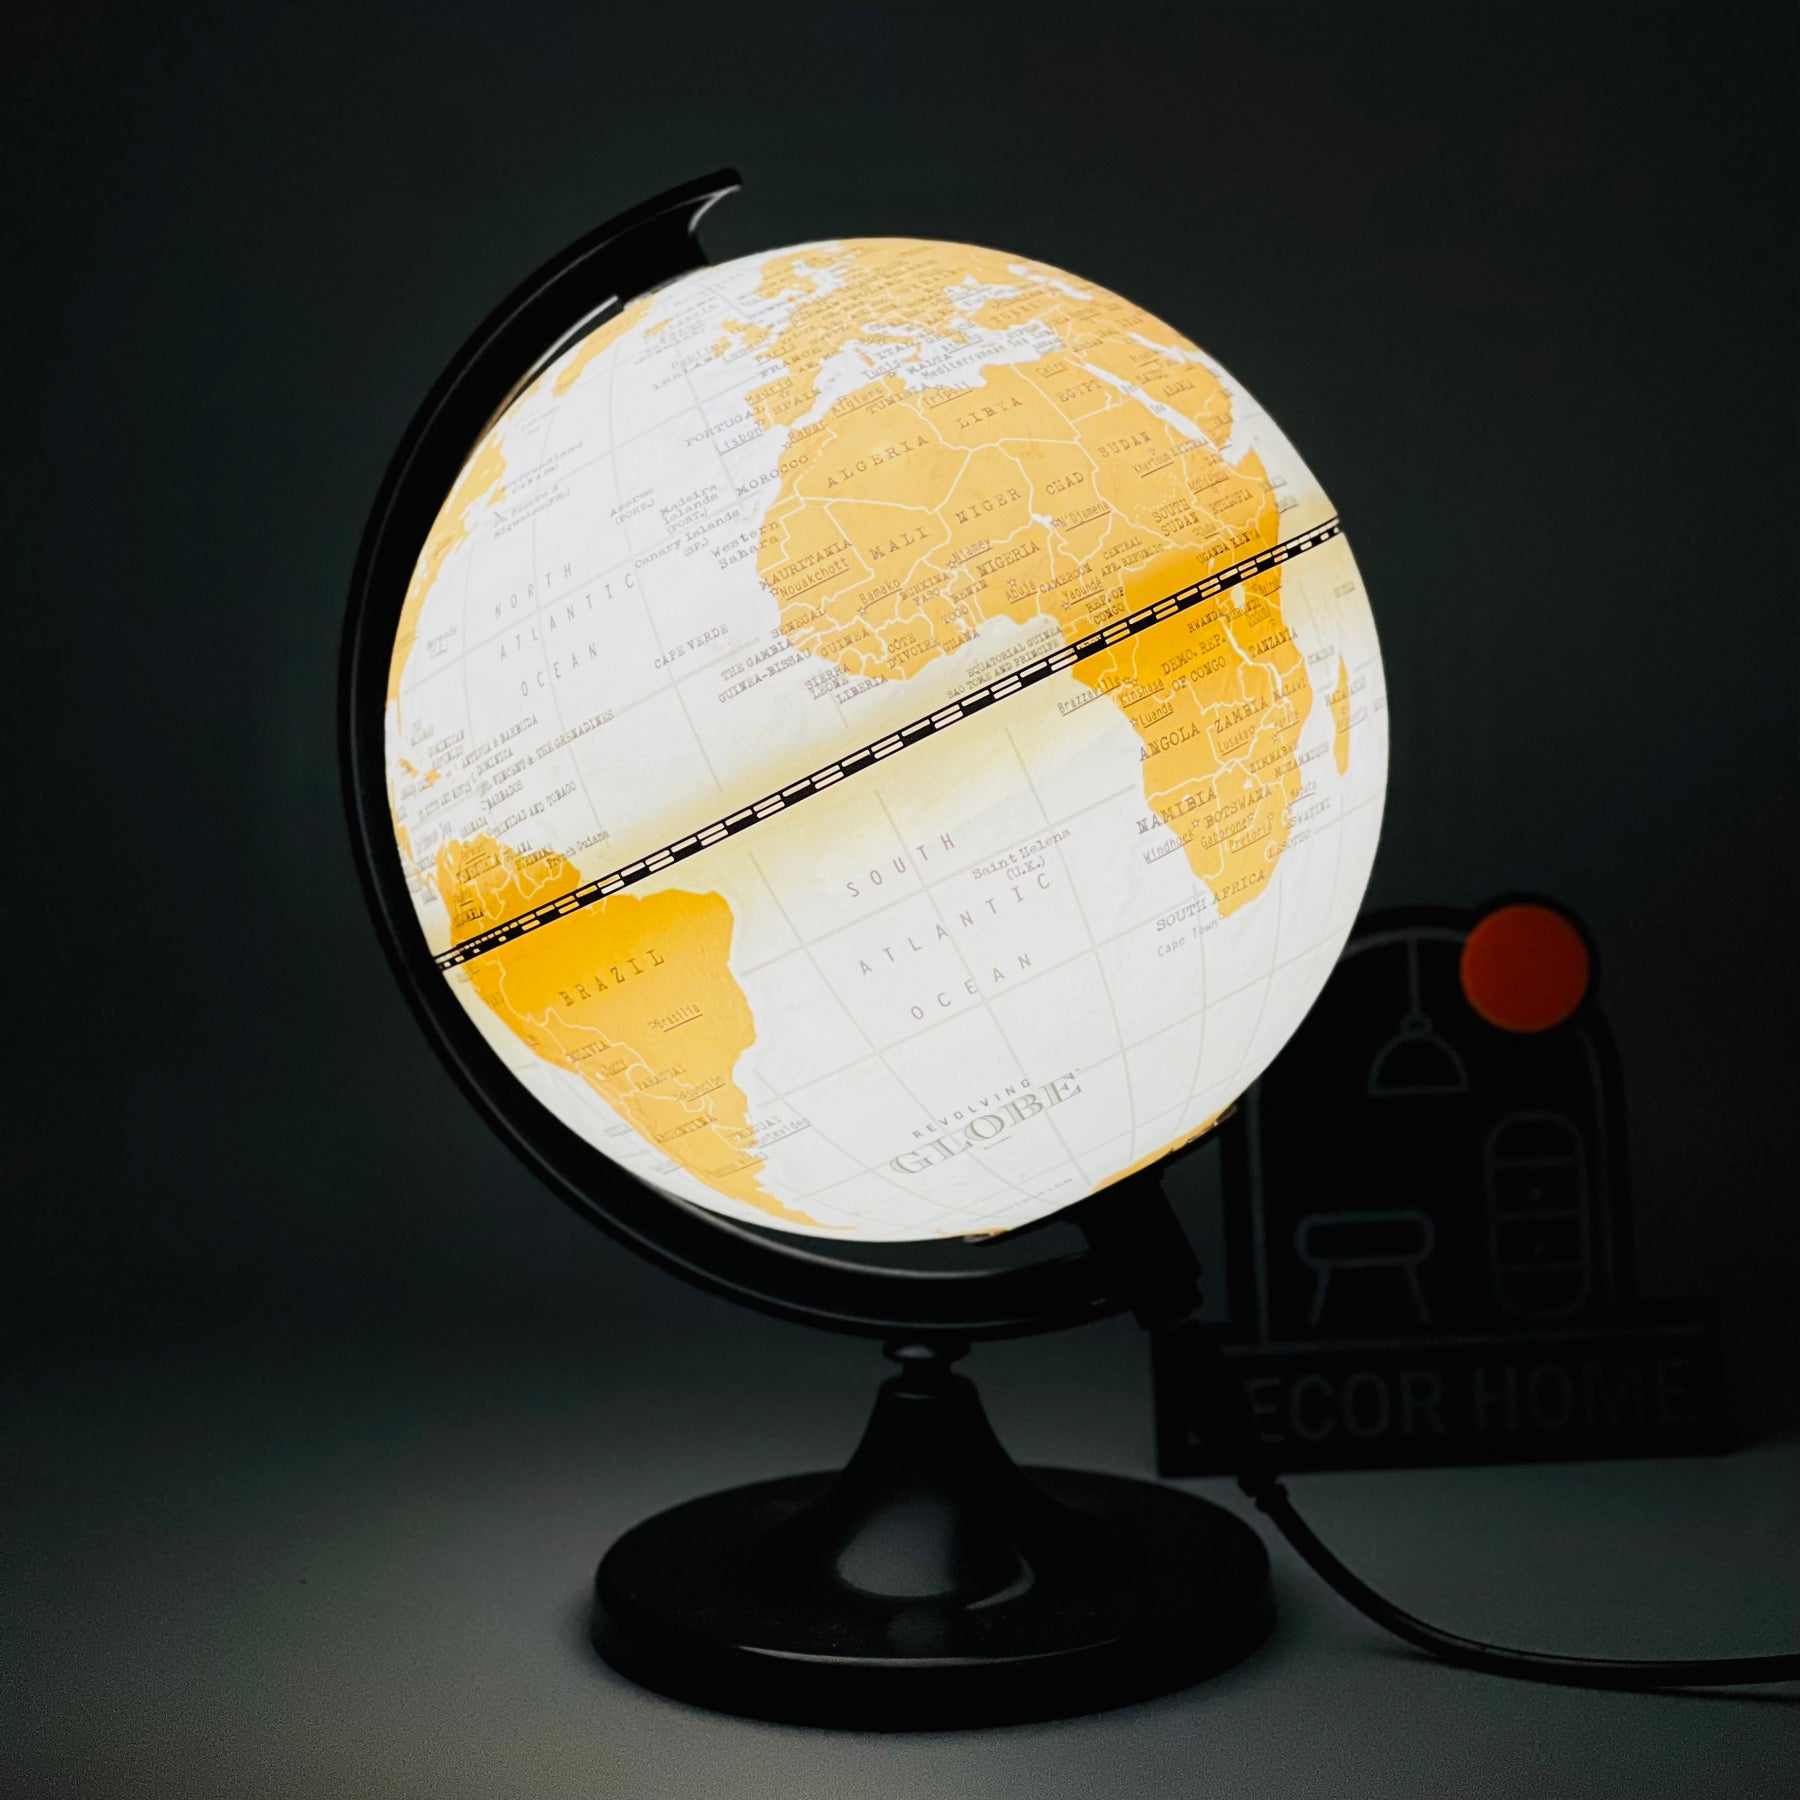 LED Oceanic Desktop World Globe